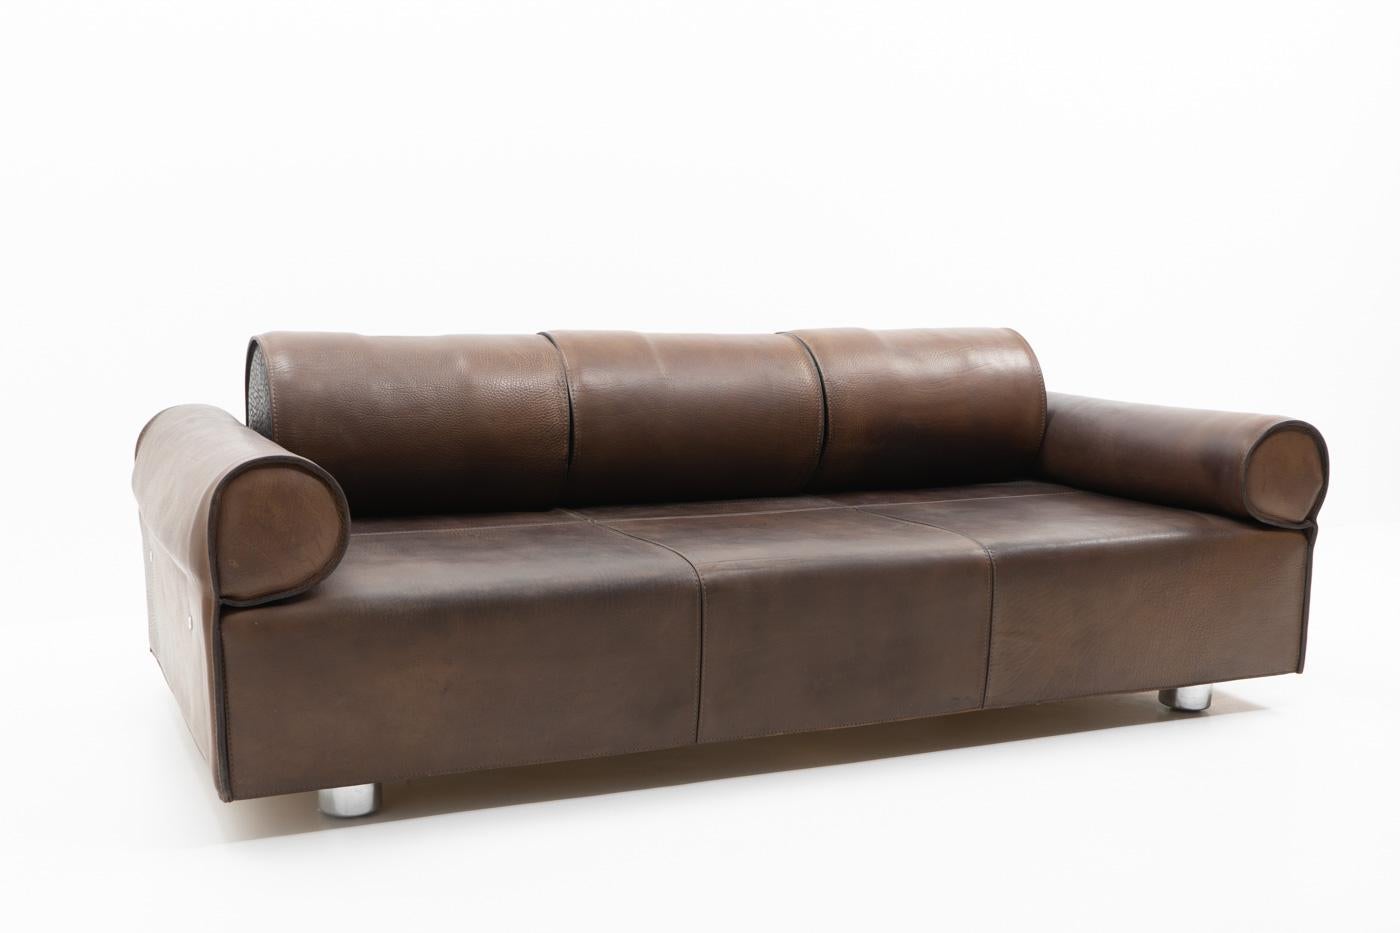 Italian Design Marzio Cecchi Three-seater Sofa in Brown Buffalo Leather, 1970s For Sale 4